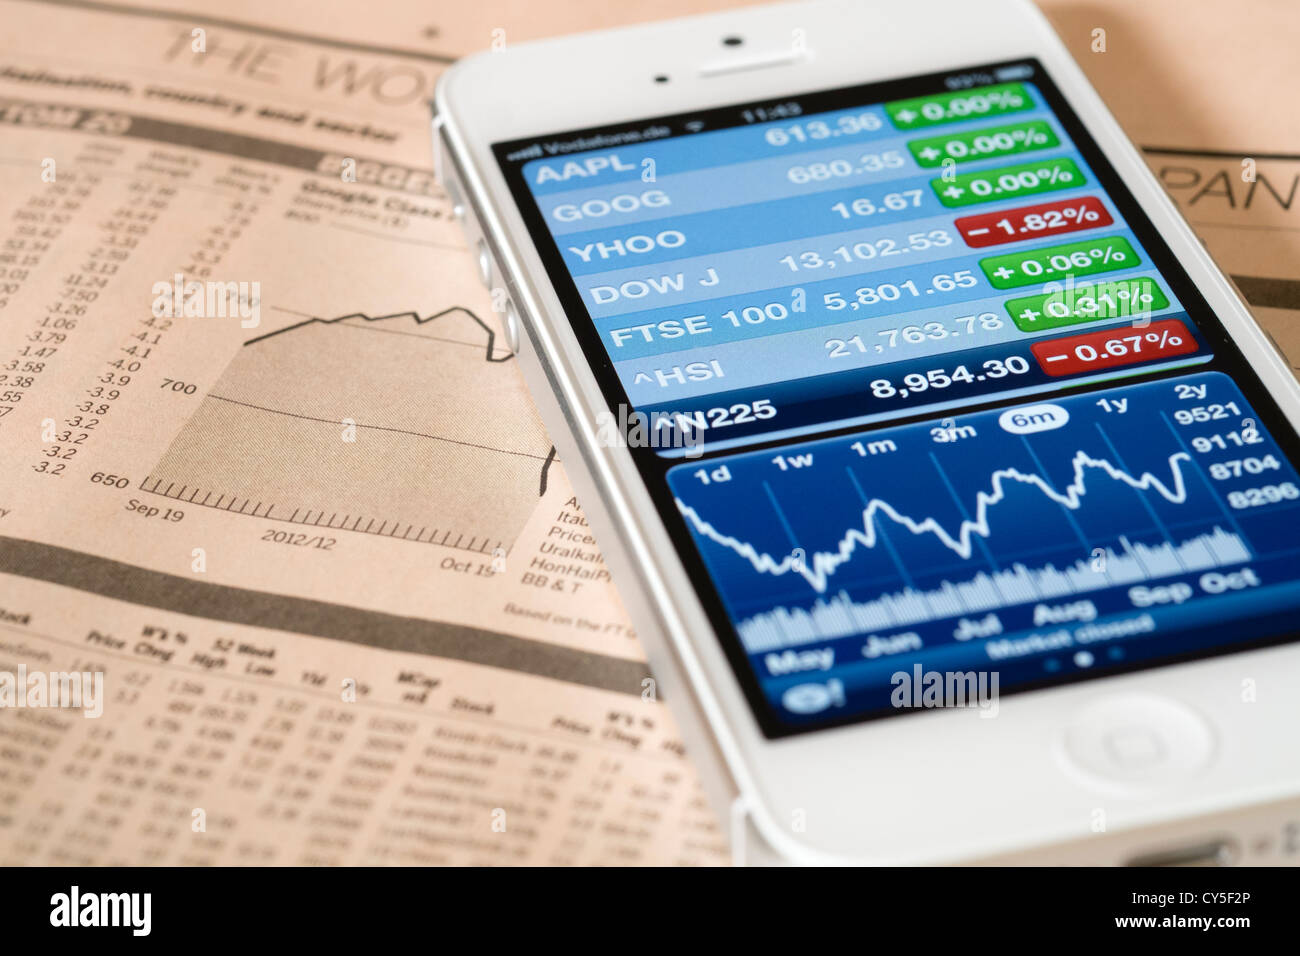 Detalle de la pantalla del teléfono inteligente iPhone 5 mostrando app financiera con Nasdaq Stock Market data Foto de stock